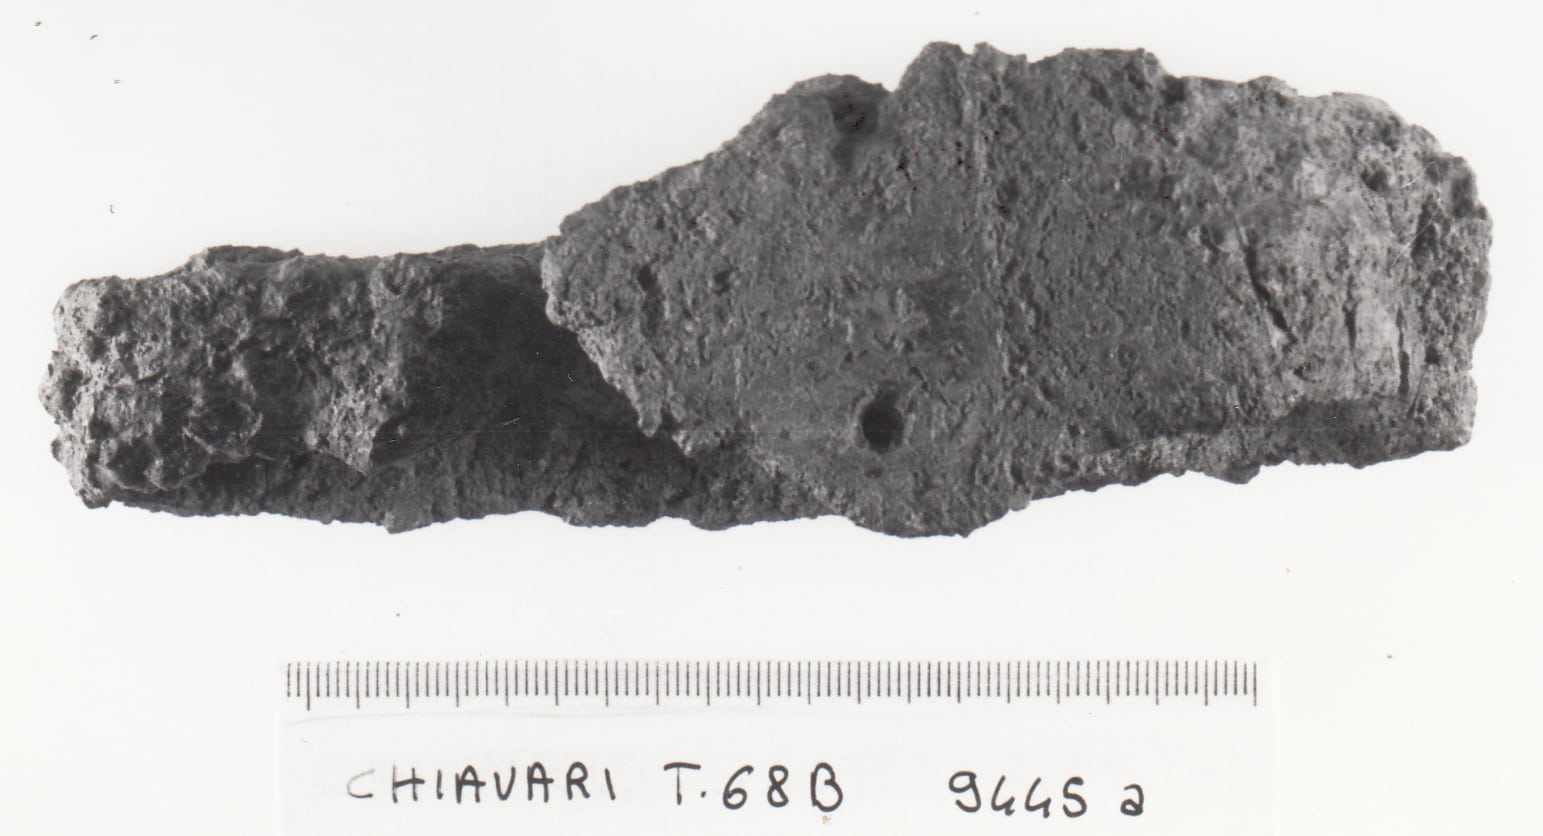 spada - cultura ligure della prima età del Ferro (VII a.C)